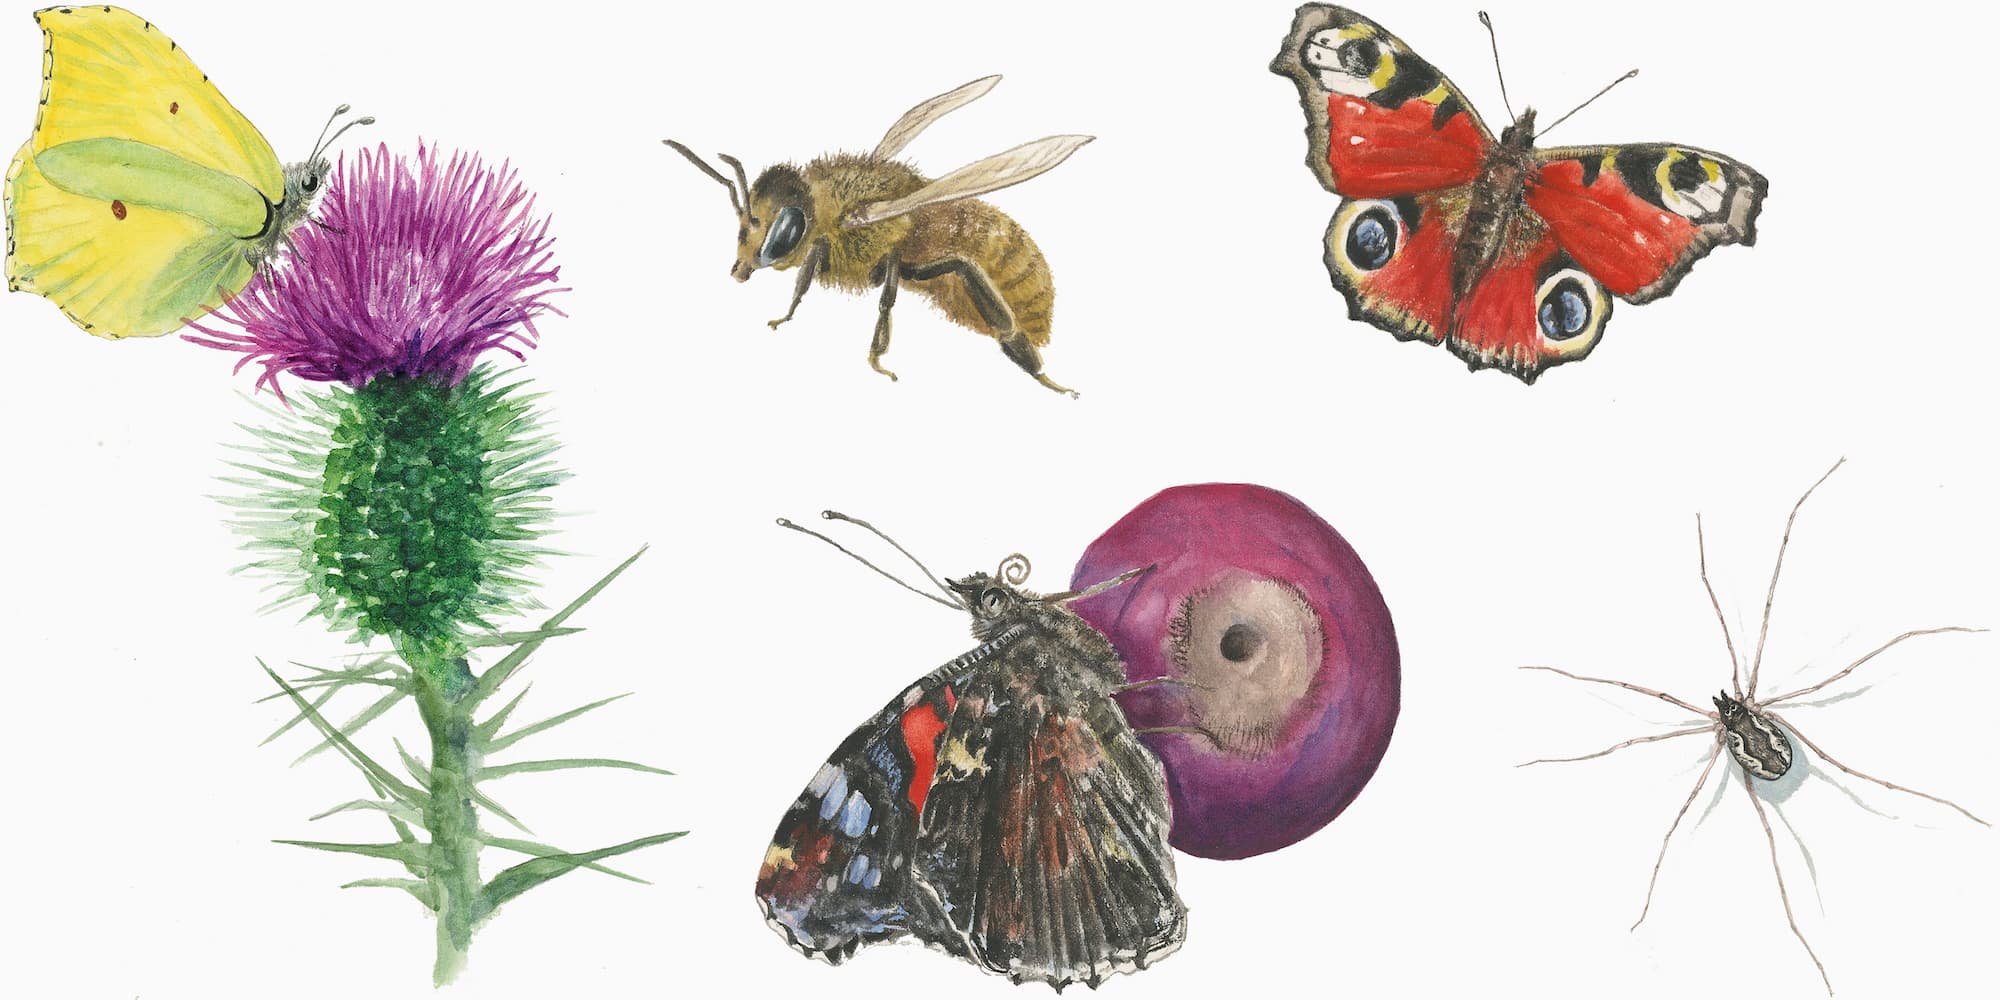 Nogle af de insekter, som er illustreret i grundejerforeningens insektsafarihæfte. Illustrationer: Jens Overgaard Christensen